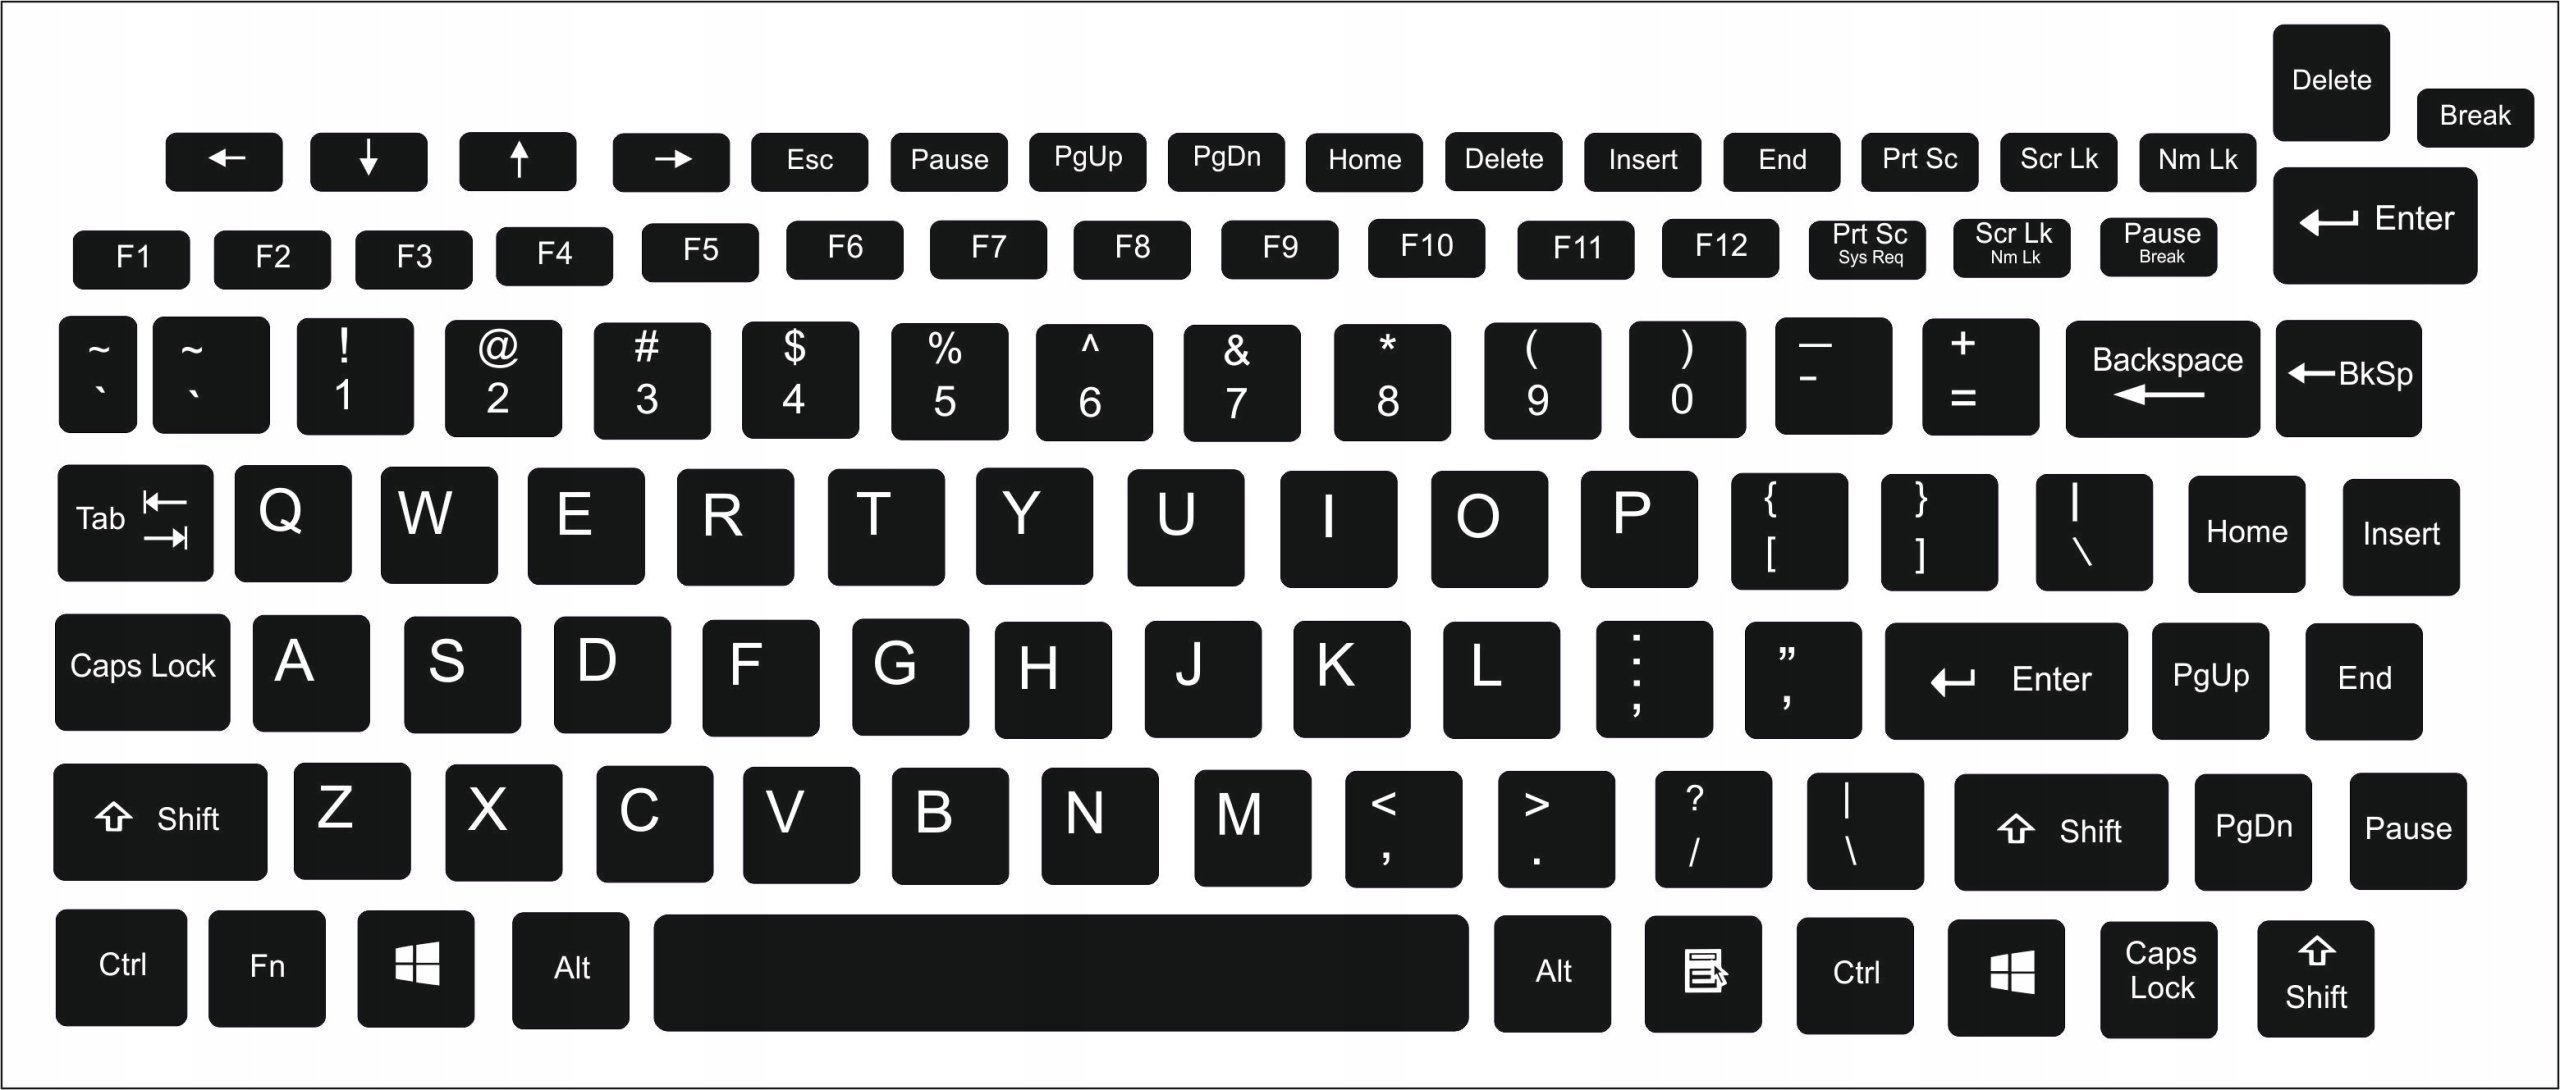 Английская раскладка на компьютере. Раскладка "клавиатура d-610". X12 клавиатура. Раскладка русской клавиатуры. Распечатка клавиатуры компьютера.